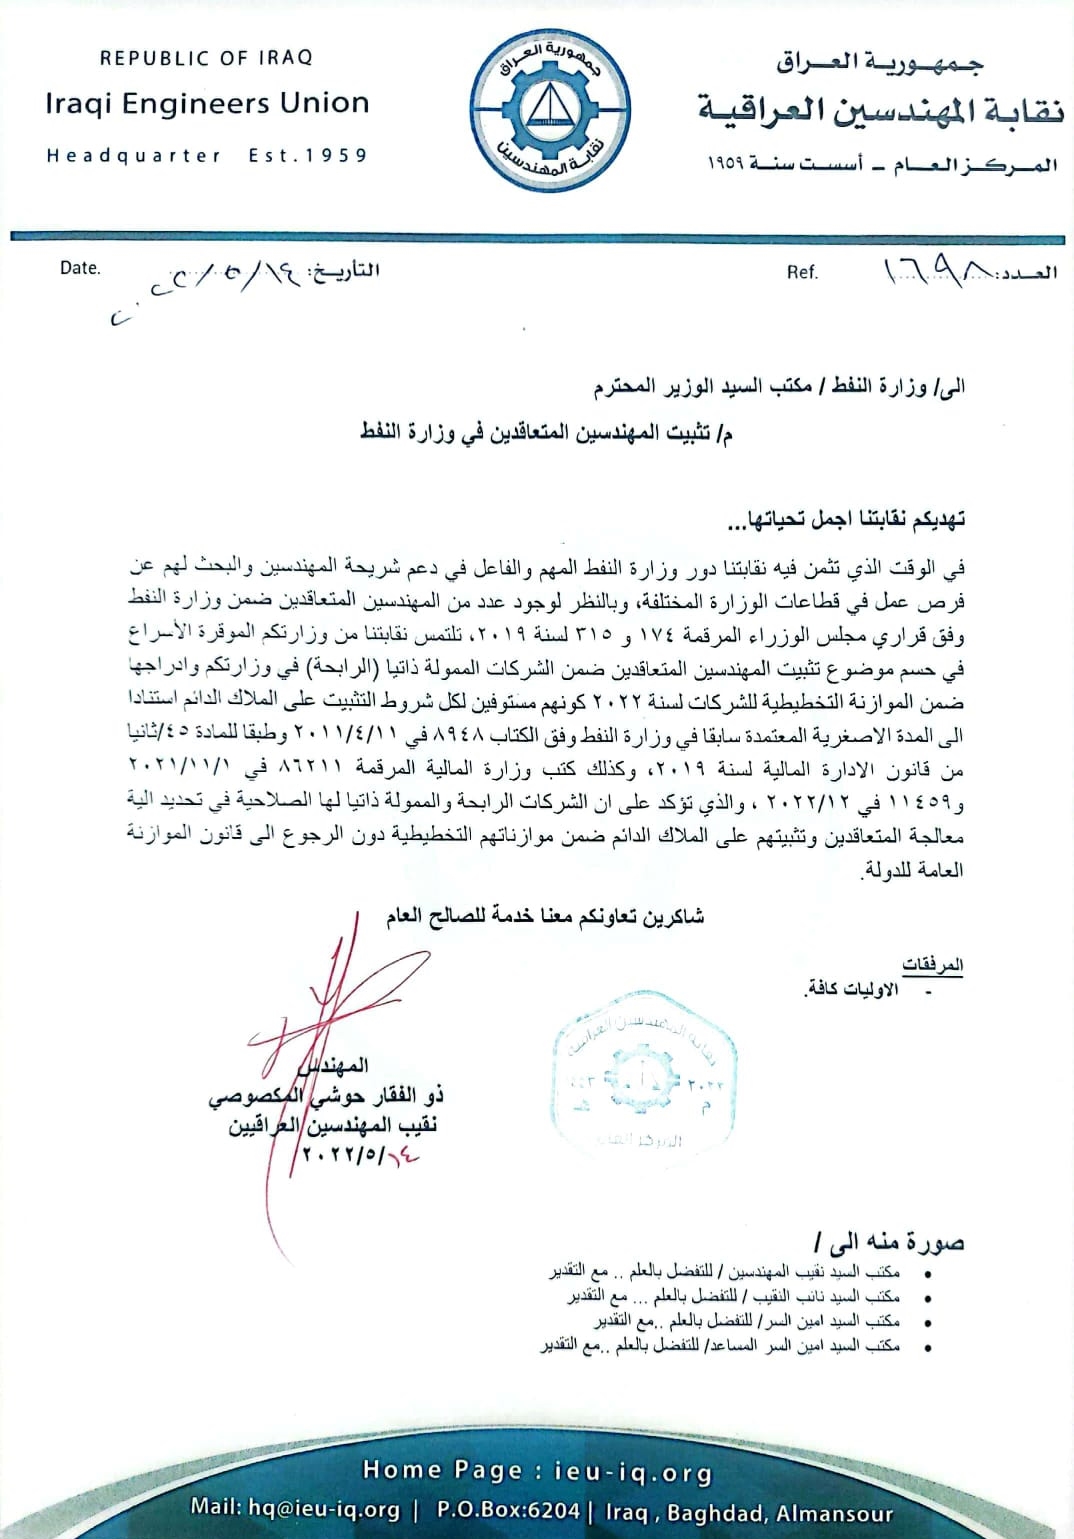 نقابة المهندسين العراقية تخاطب وزارة النفط بشأن تثبيت المهندسين المتعاقدين معها وفق قراري مجلس الوزراء (174) و (315) لسنة 2019